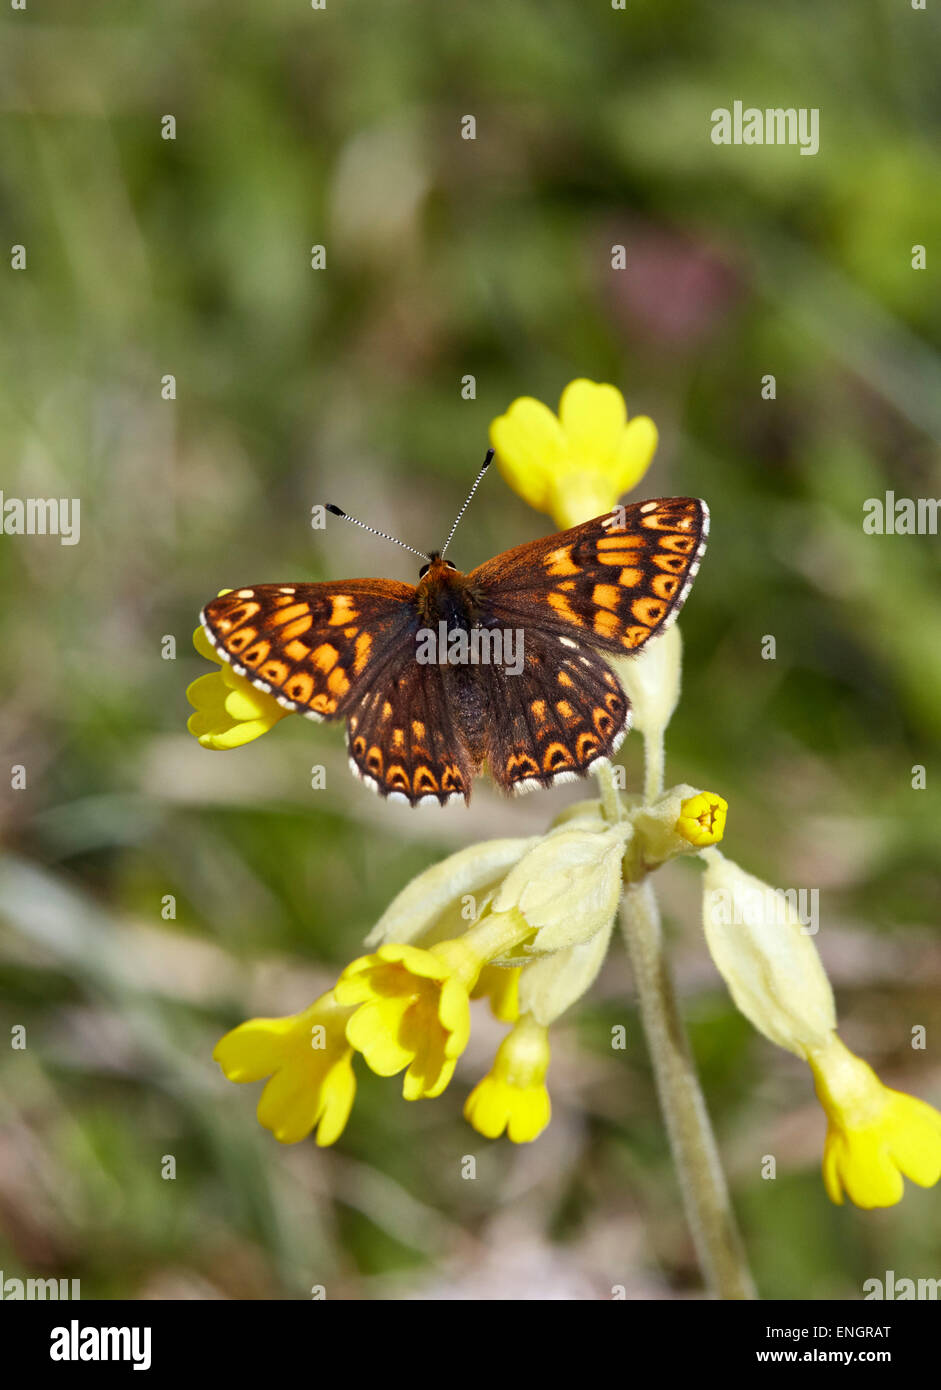 Herzog von Burgund Schmetterling auf Schlüsselblume. Noar Hill Nature Reserve, Selborne, Hampshire, England. Stockfoto